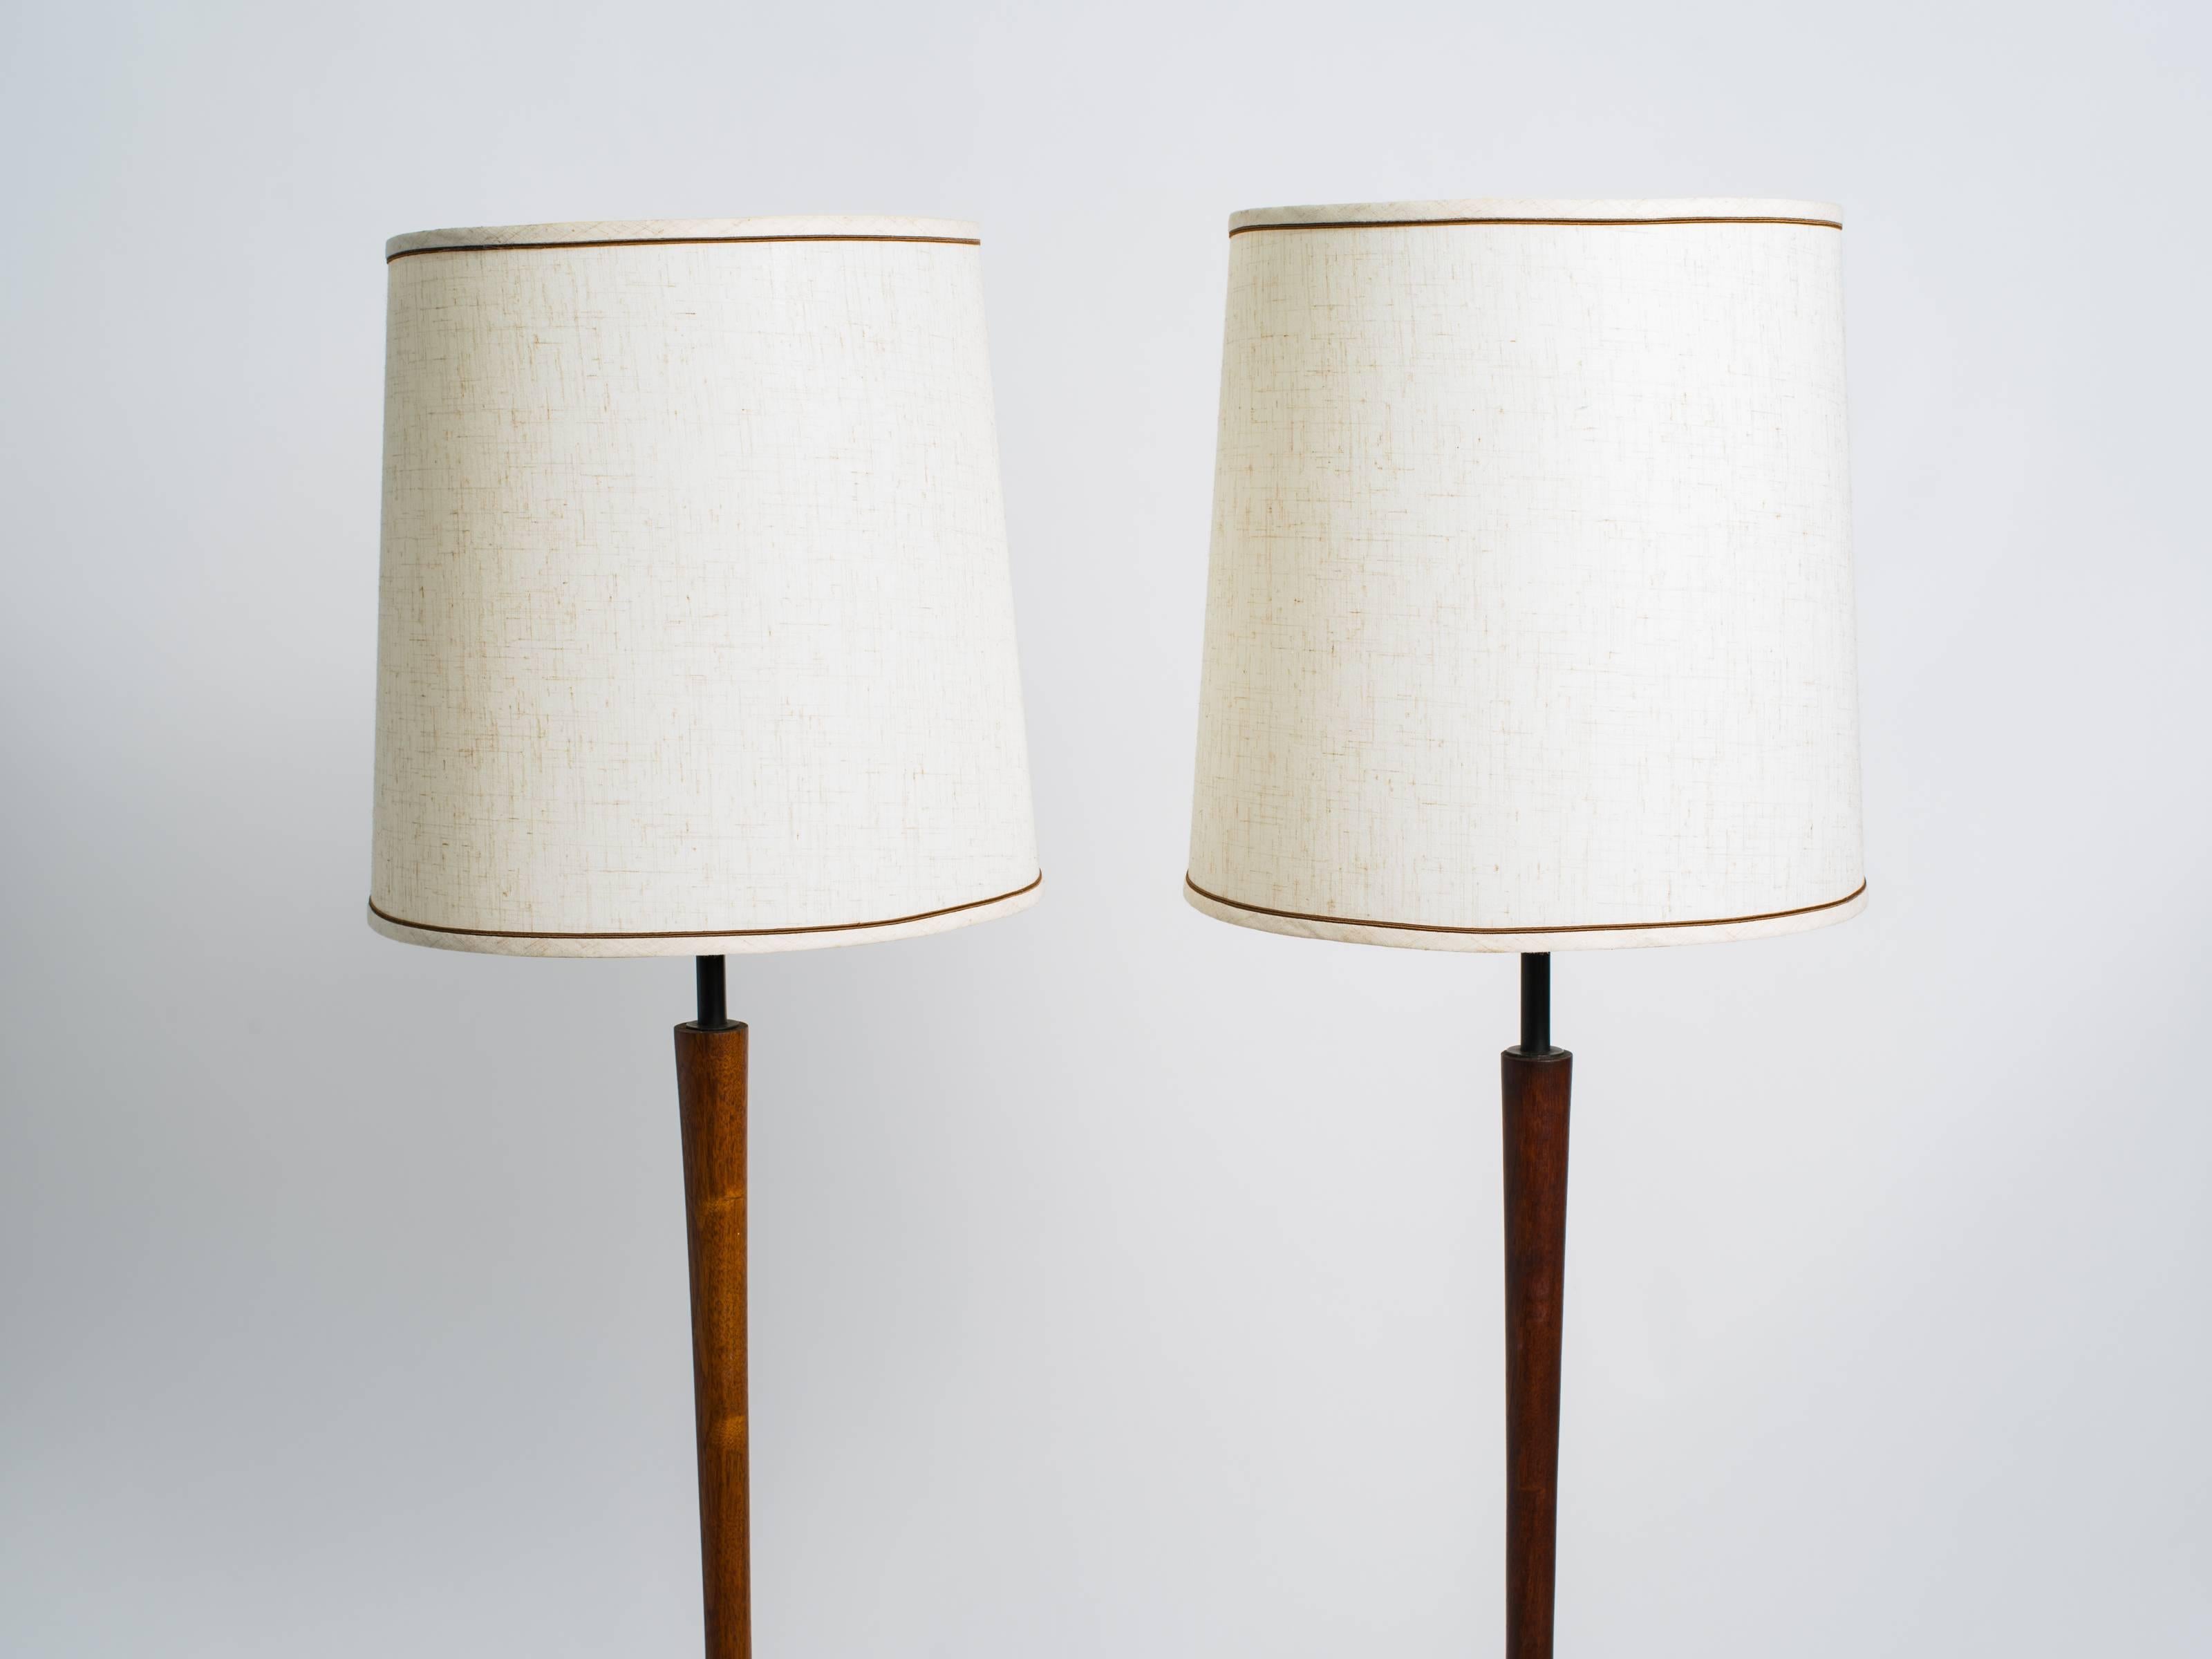 Pair of Danish modern teak floor lamps. One is 1/2